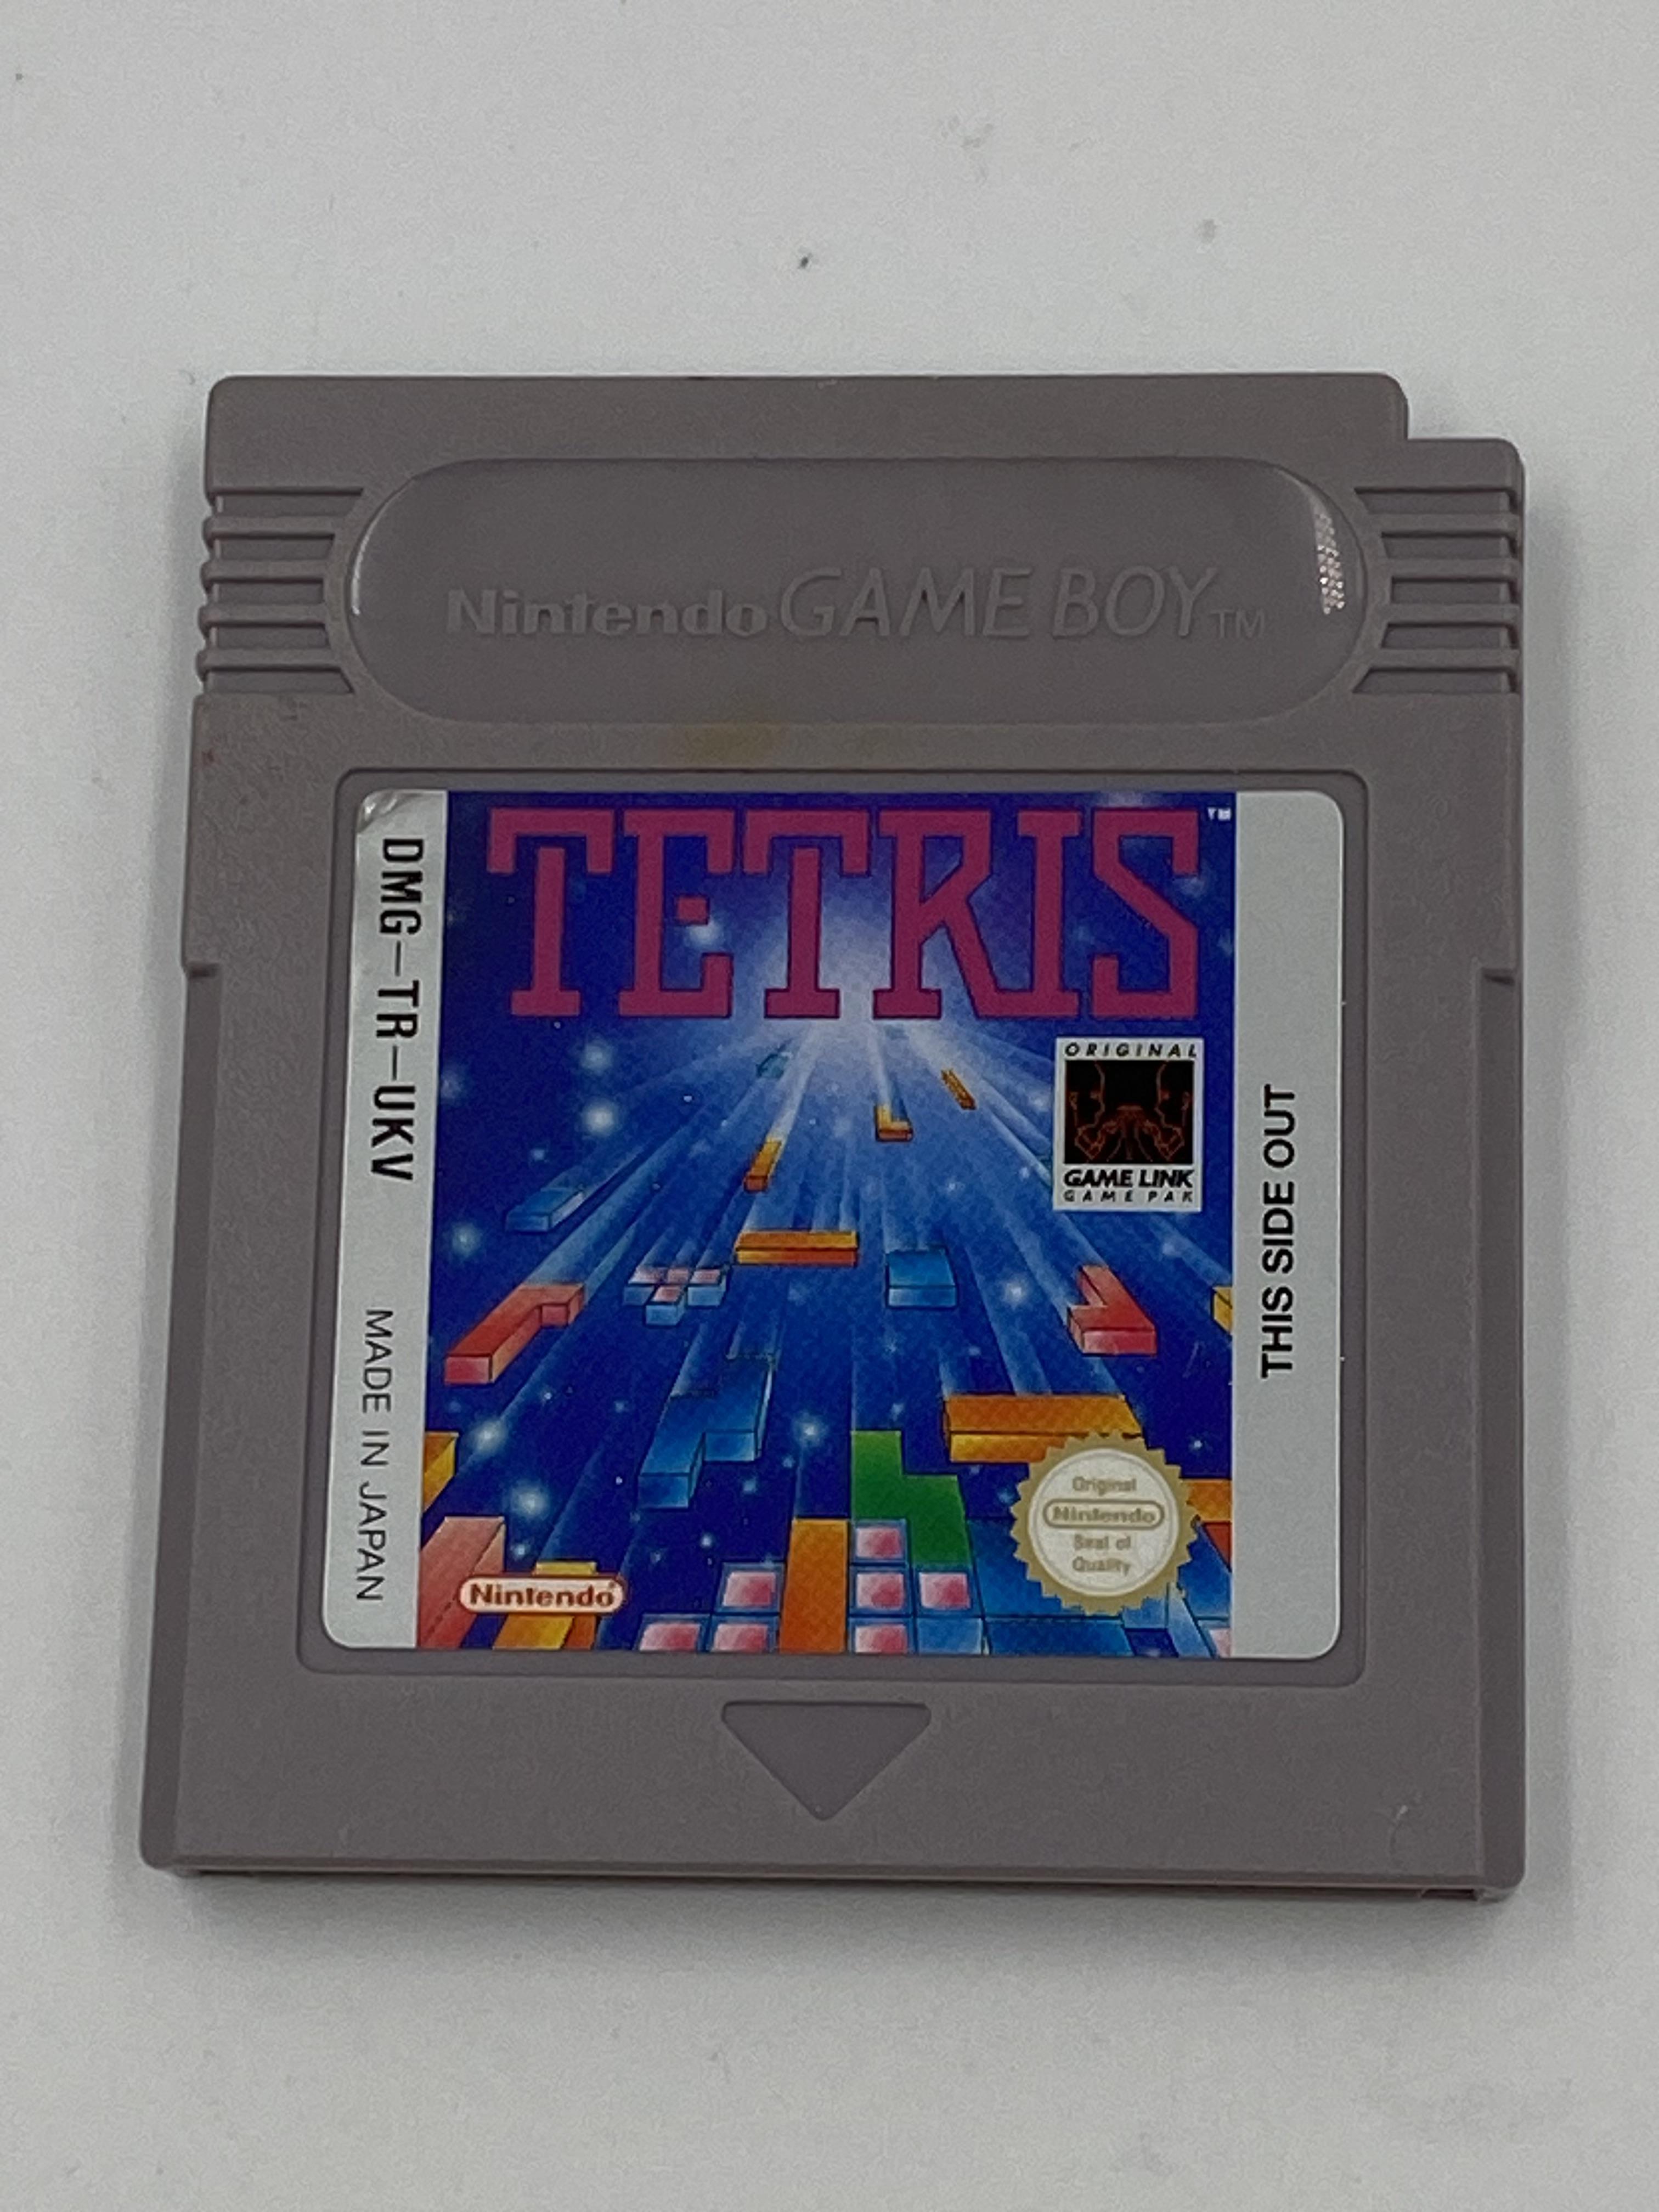 Nintendo Gameboy Tetris - Image 2 of 2